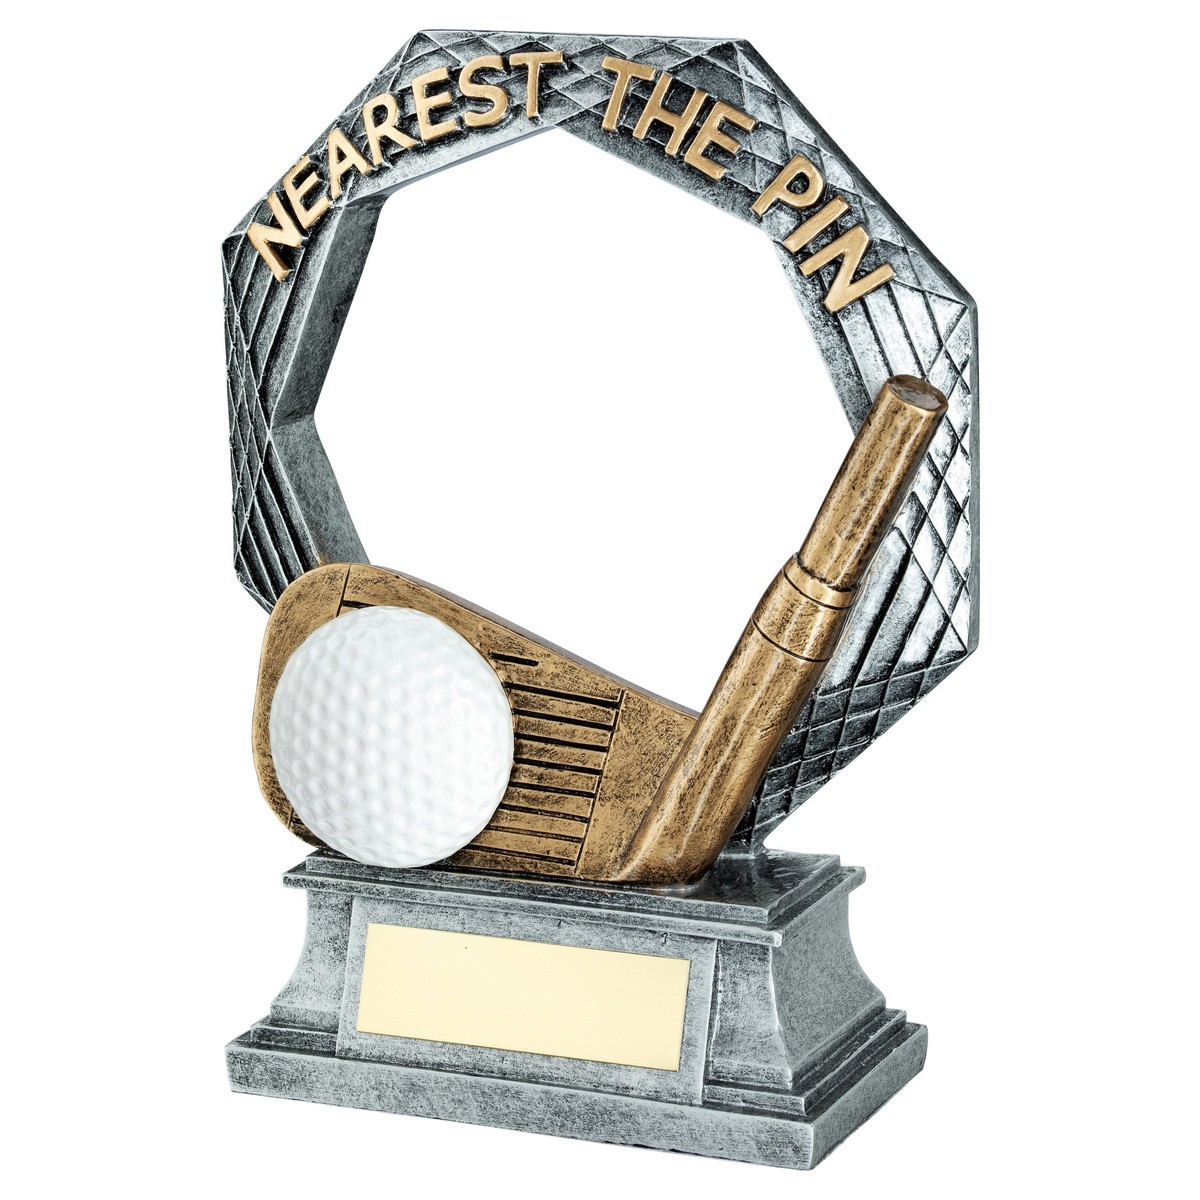 Silver/Gold Nearest The Pin Golf Award